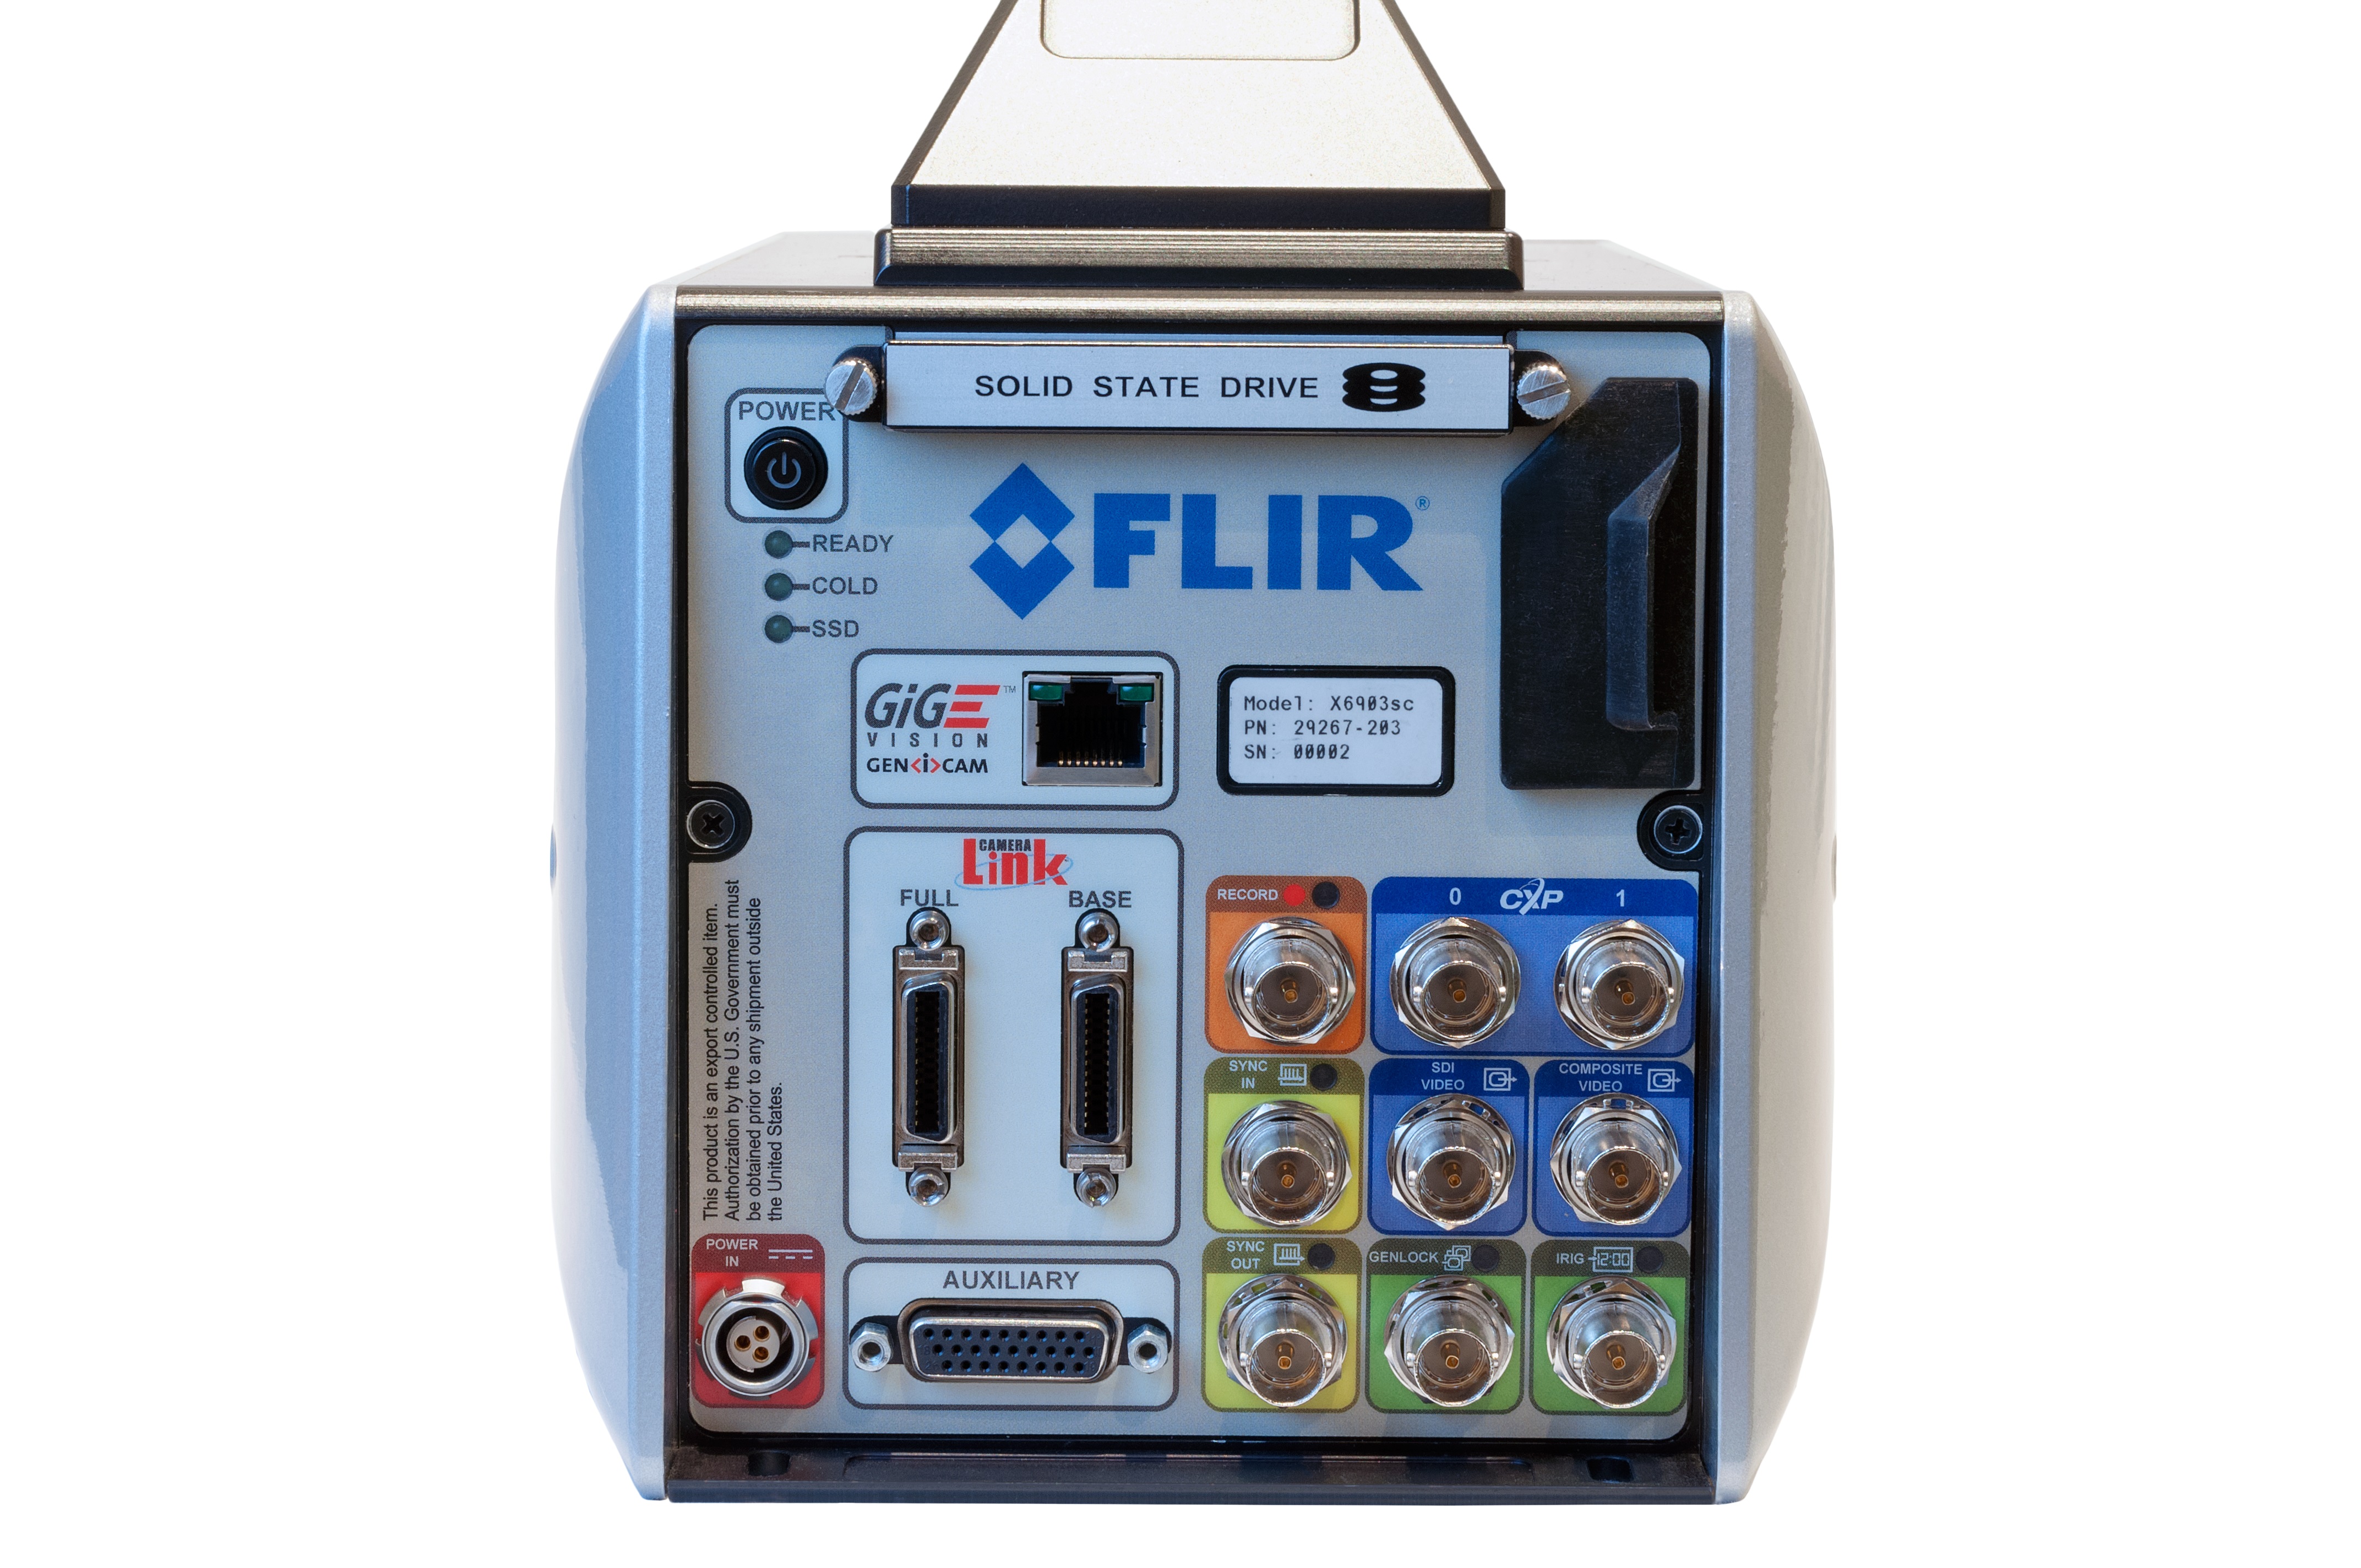 La caméra scientifique X6900sc de FLIR aide les chercheurs à effectuer la mesure thermique des objets à grande vitesse